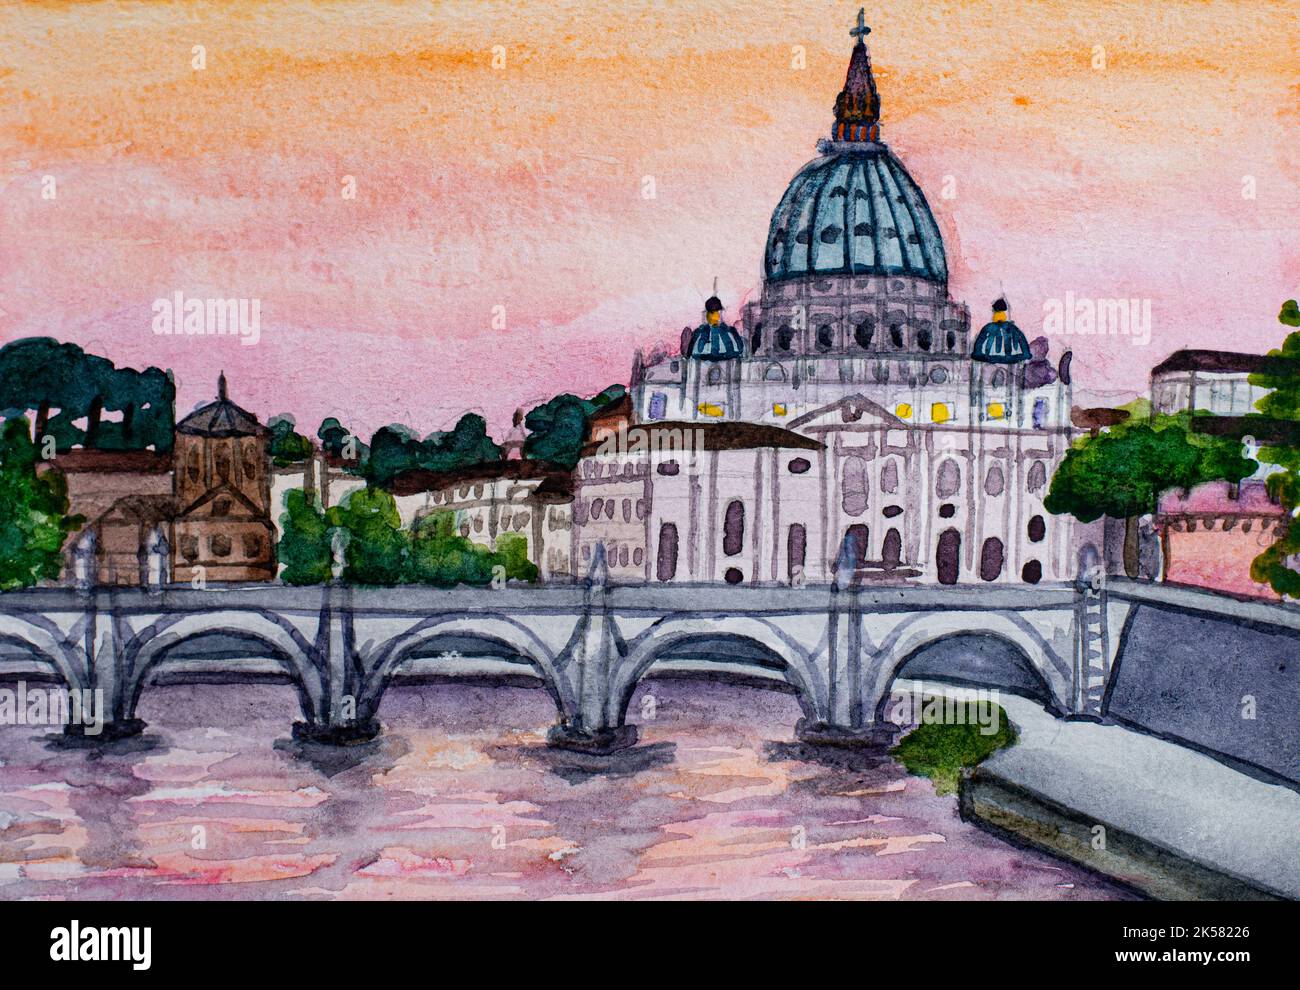 Pont Angelo et basilique Saint-Pierre à Rome, Italie. Aquarelle Banque D'Images